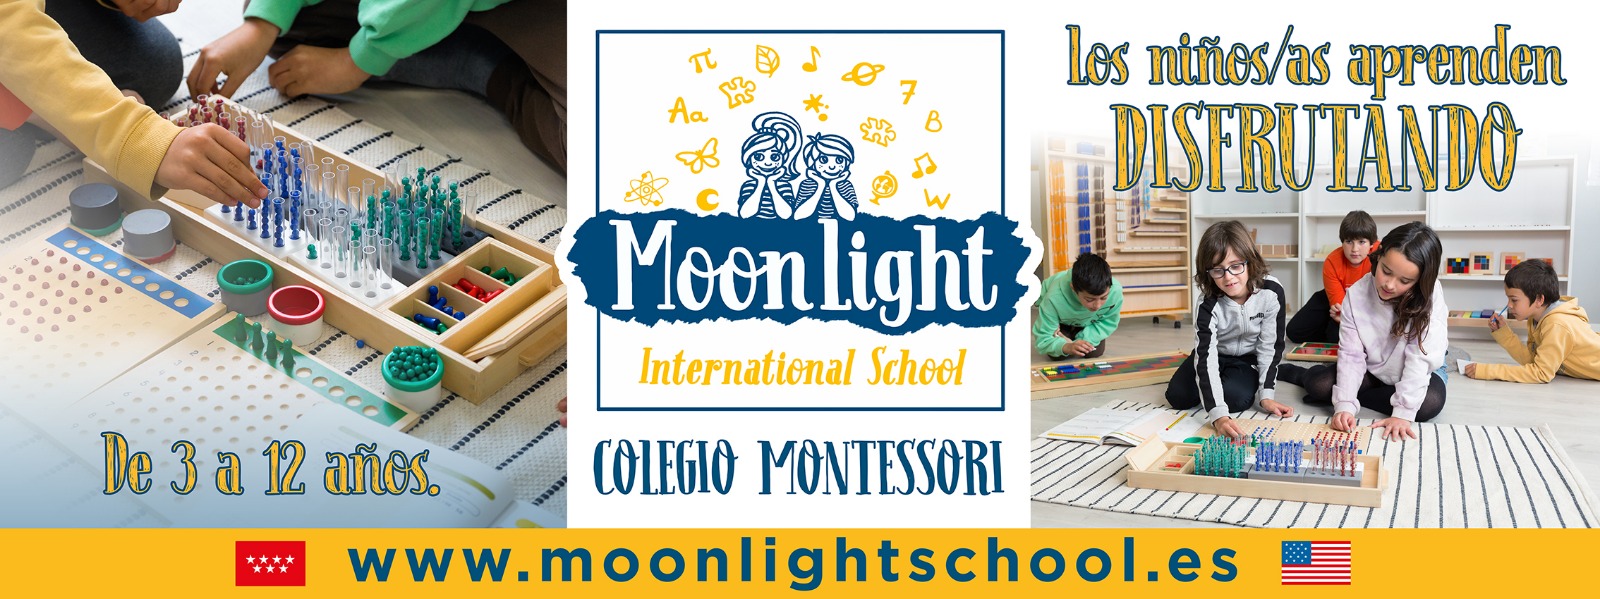 Banner Moonlight School con el logo oficial y diferentes niños con actividades. Texto que dice: Los niños/as aprenden disfrutando